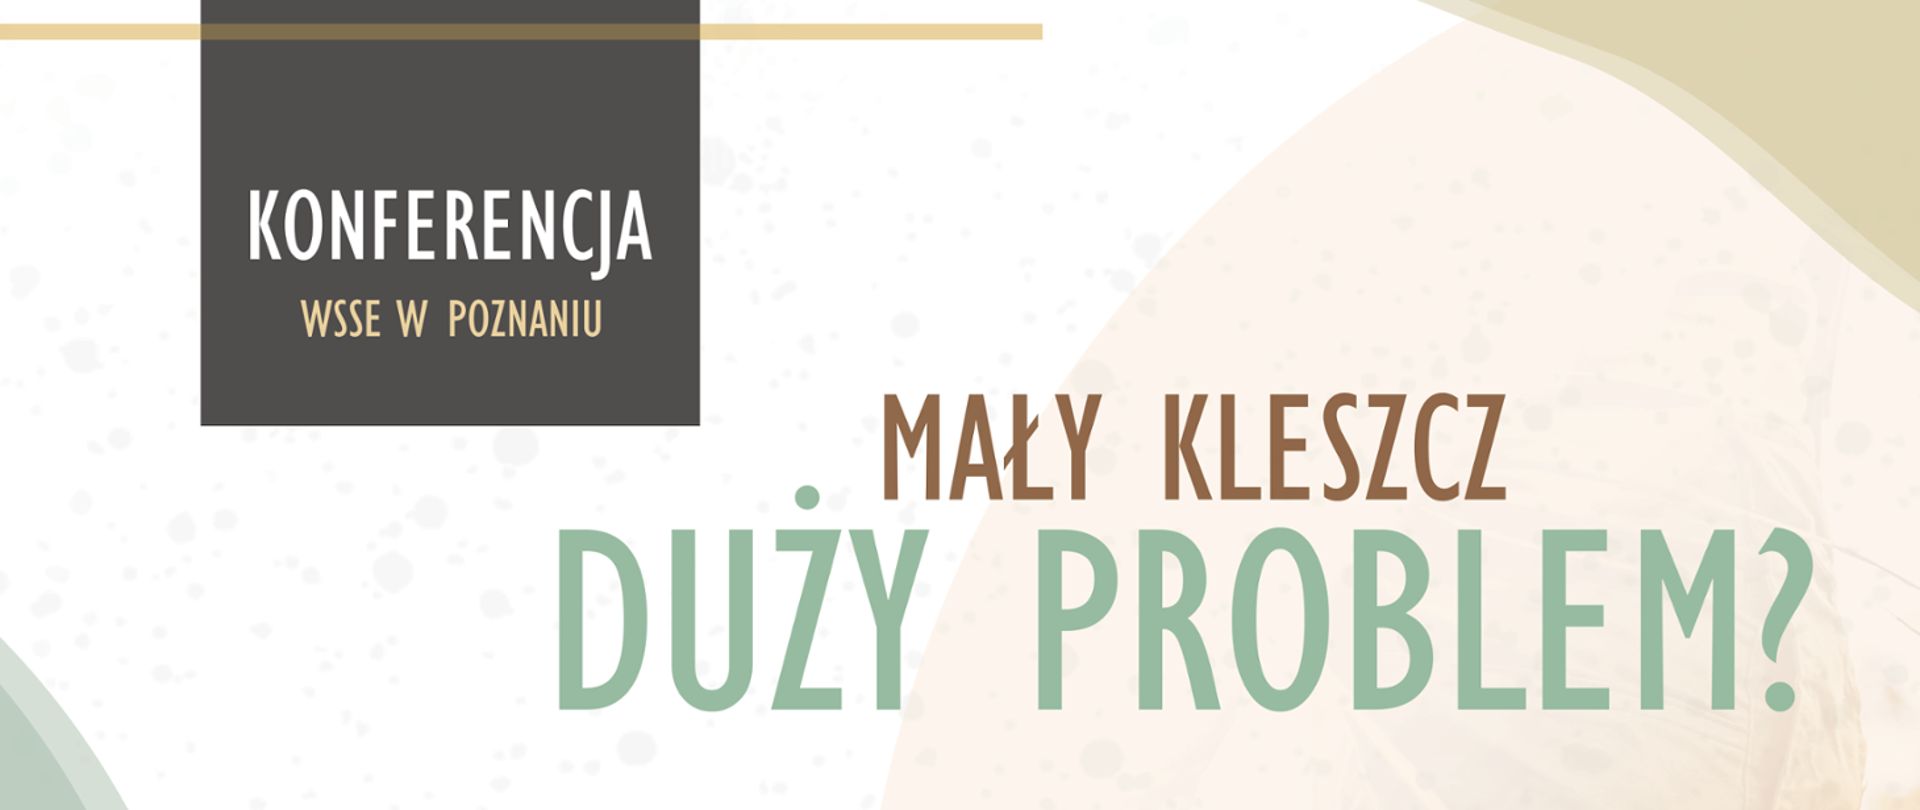 Baner z napisem Konferencja WSSE w Poznaniu i "Mały kleszcz - duży problem?" z logoPIS